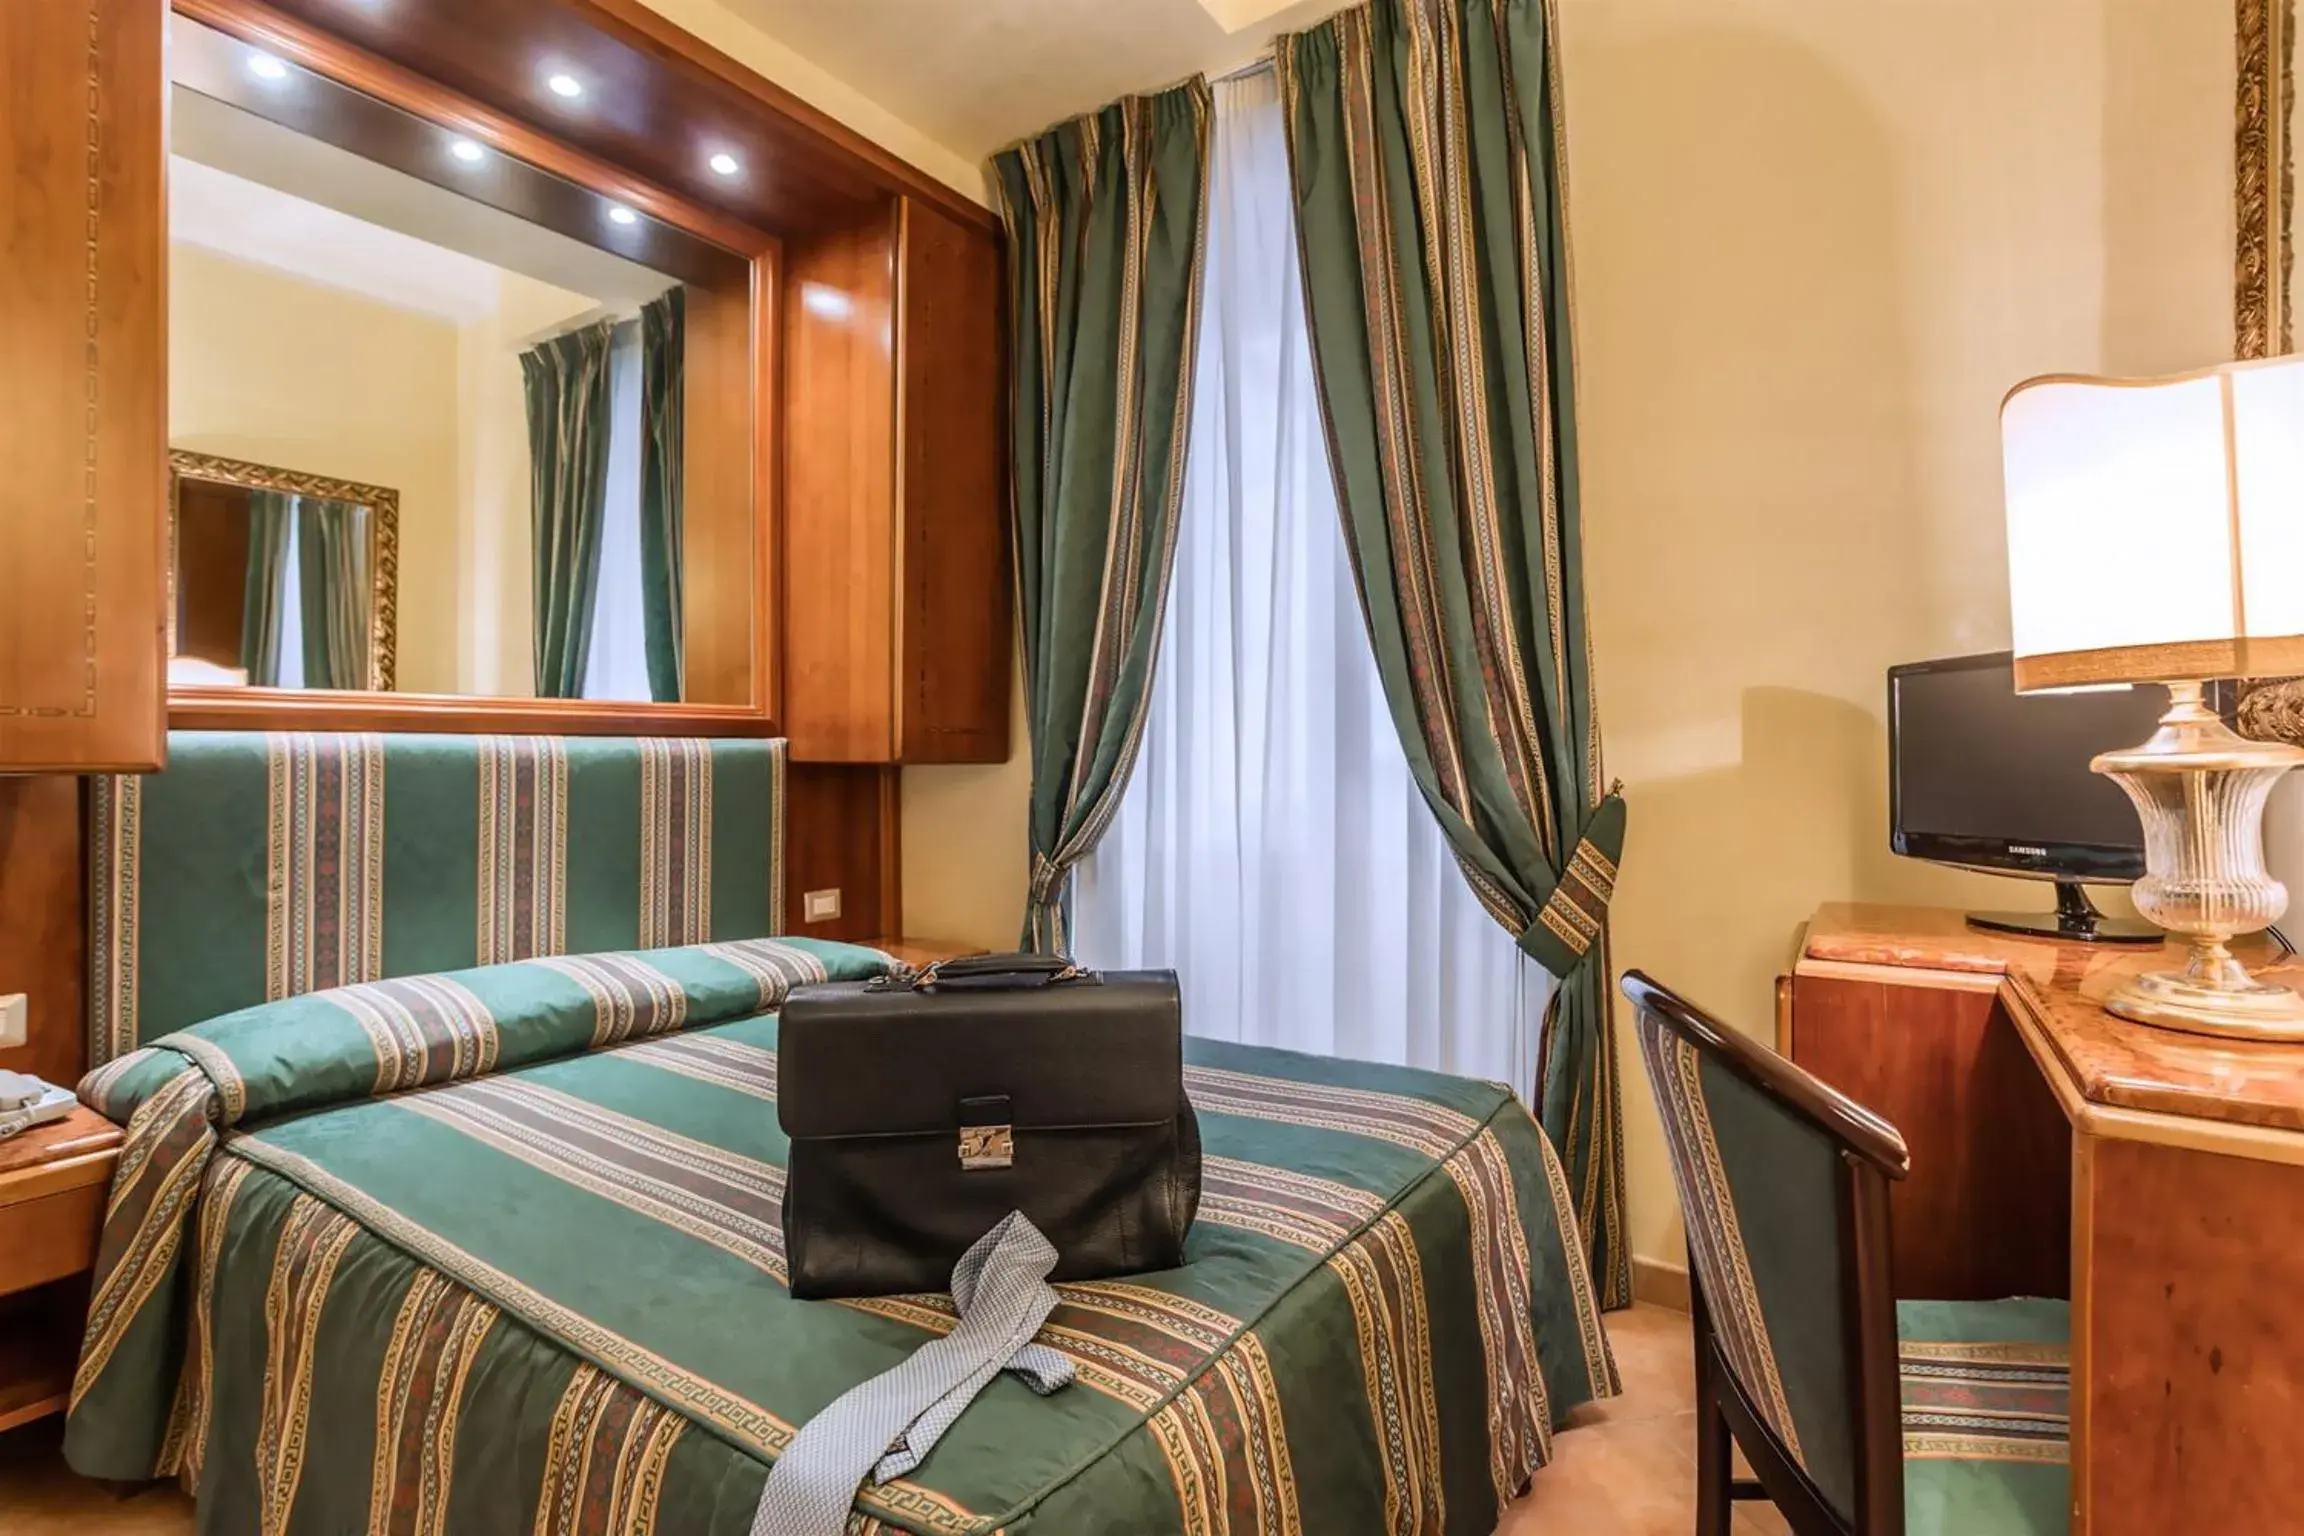 Bedroom, TV/Entertainment Center in Raeli Hotel Regio